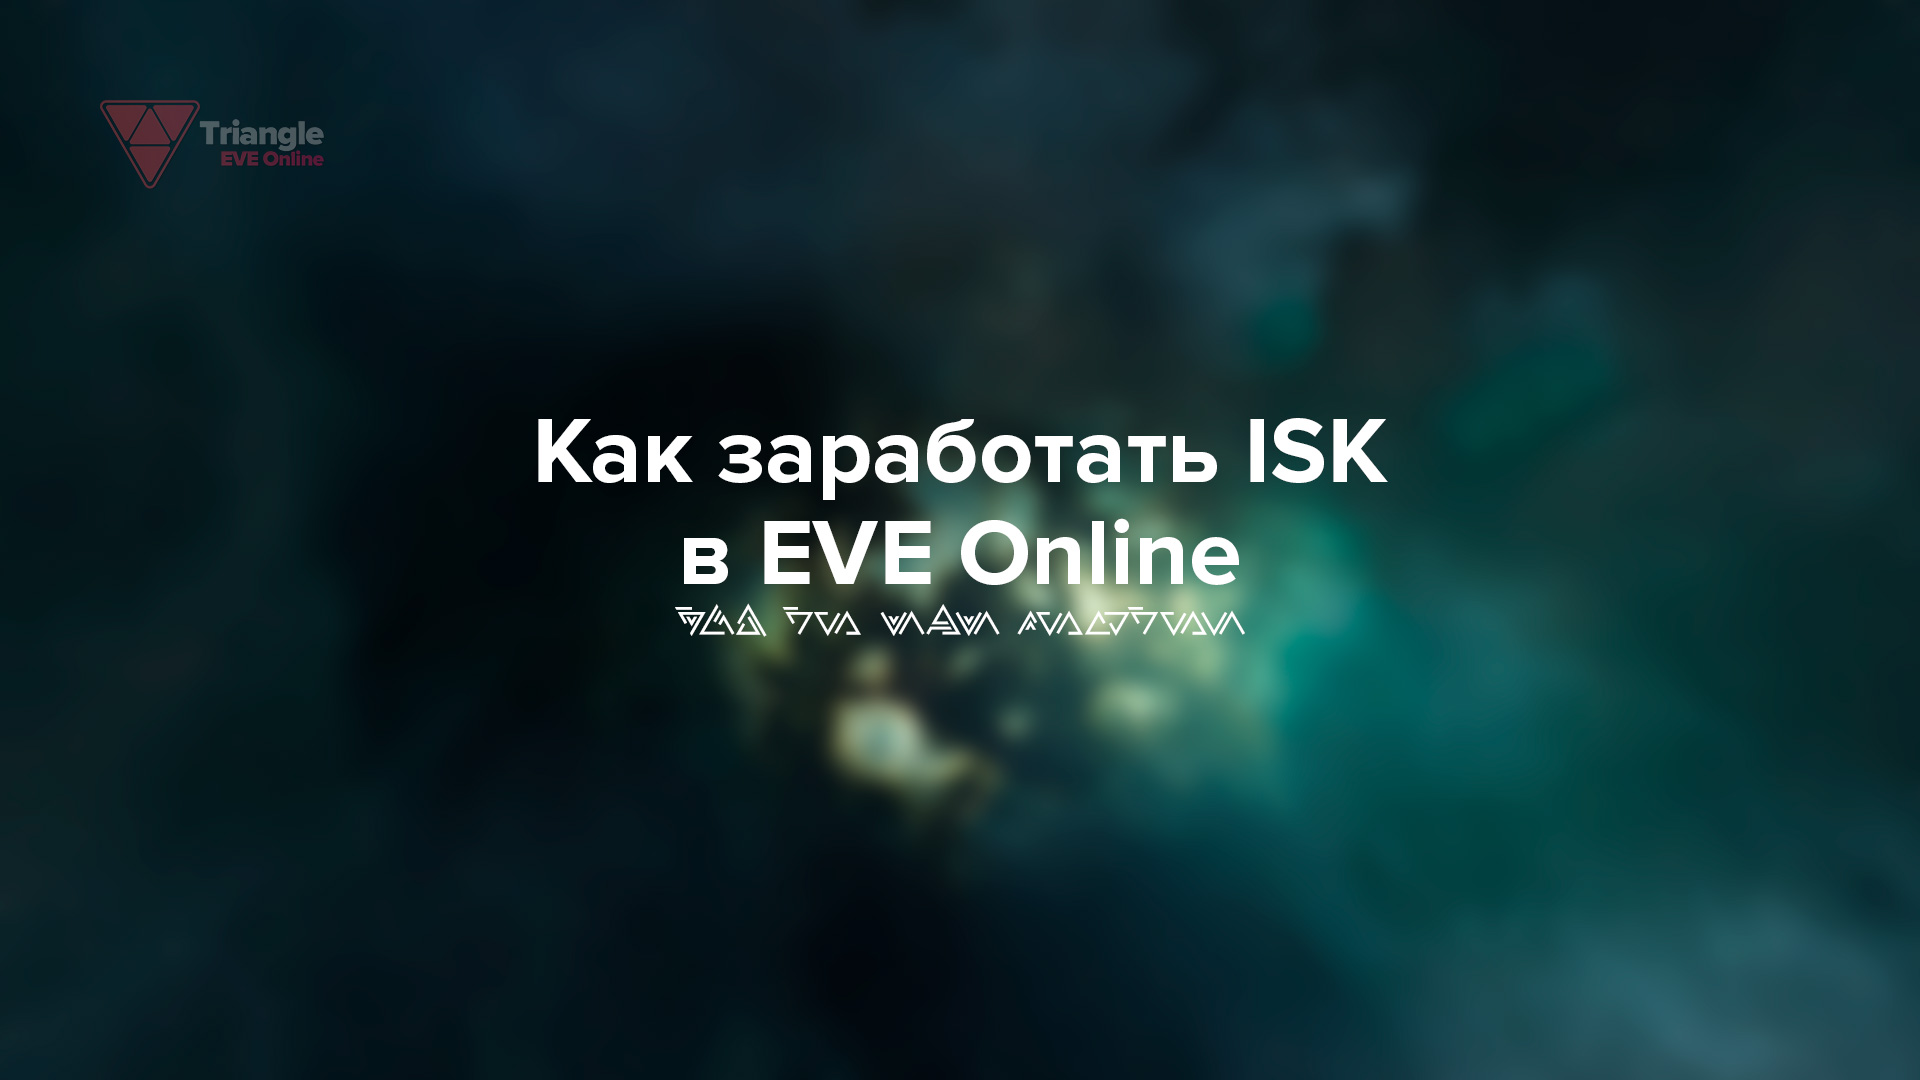 В EVE Online существует несколько простых способов получения ISK. В нашем гайде подробно описано как заработать ISK в игре